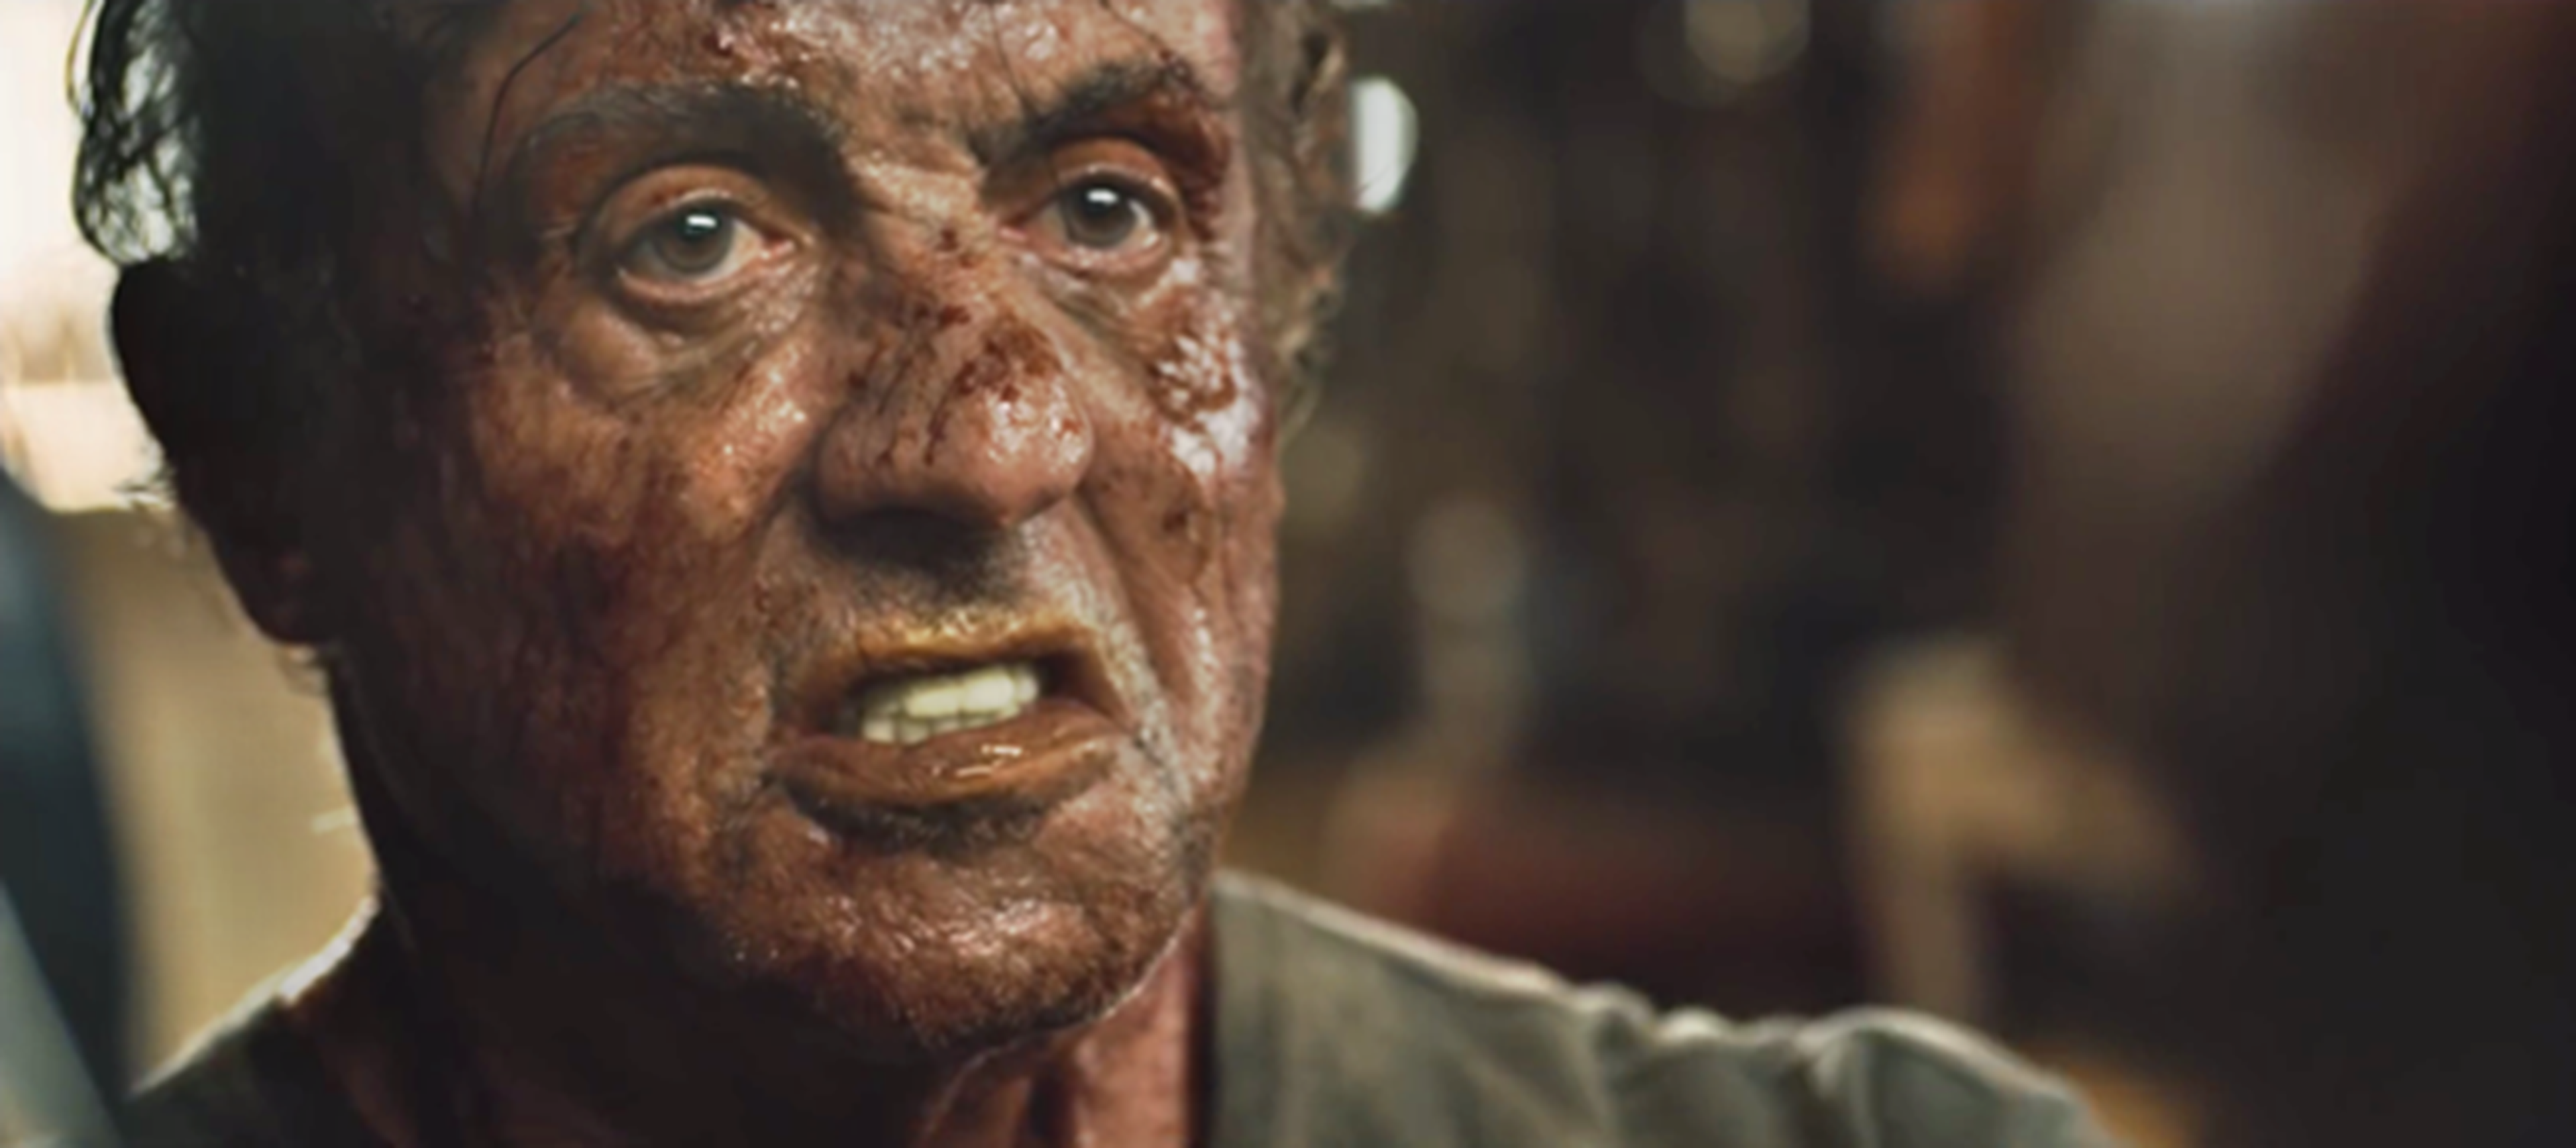 Rambo V: Last Bloood - Tráiler de lo nuevo de Stallone (inglés)